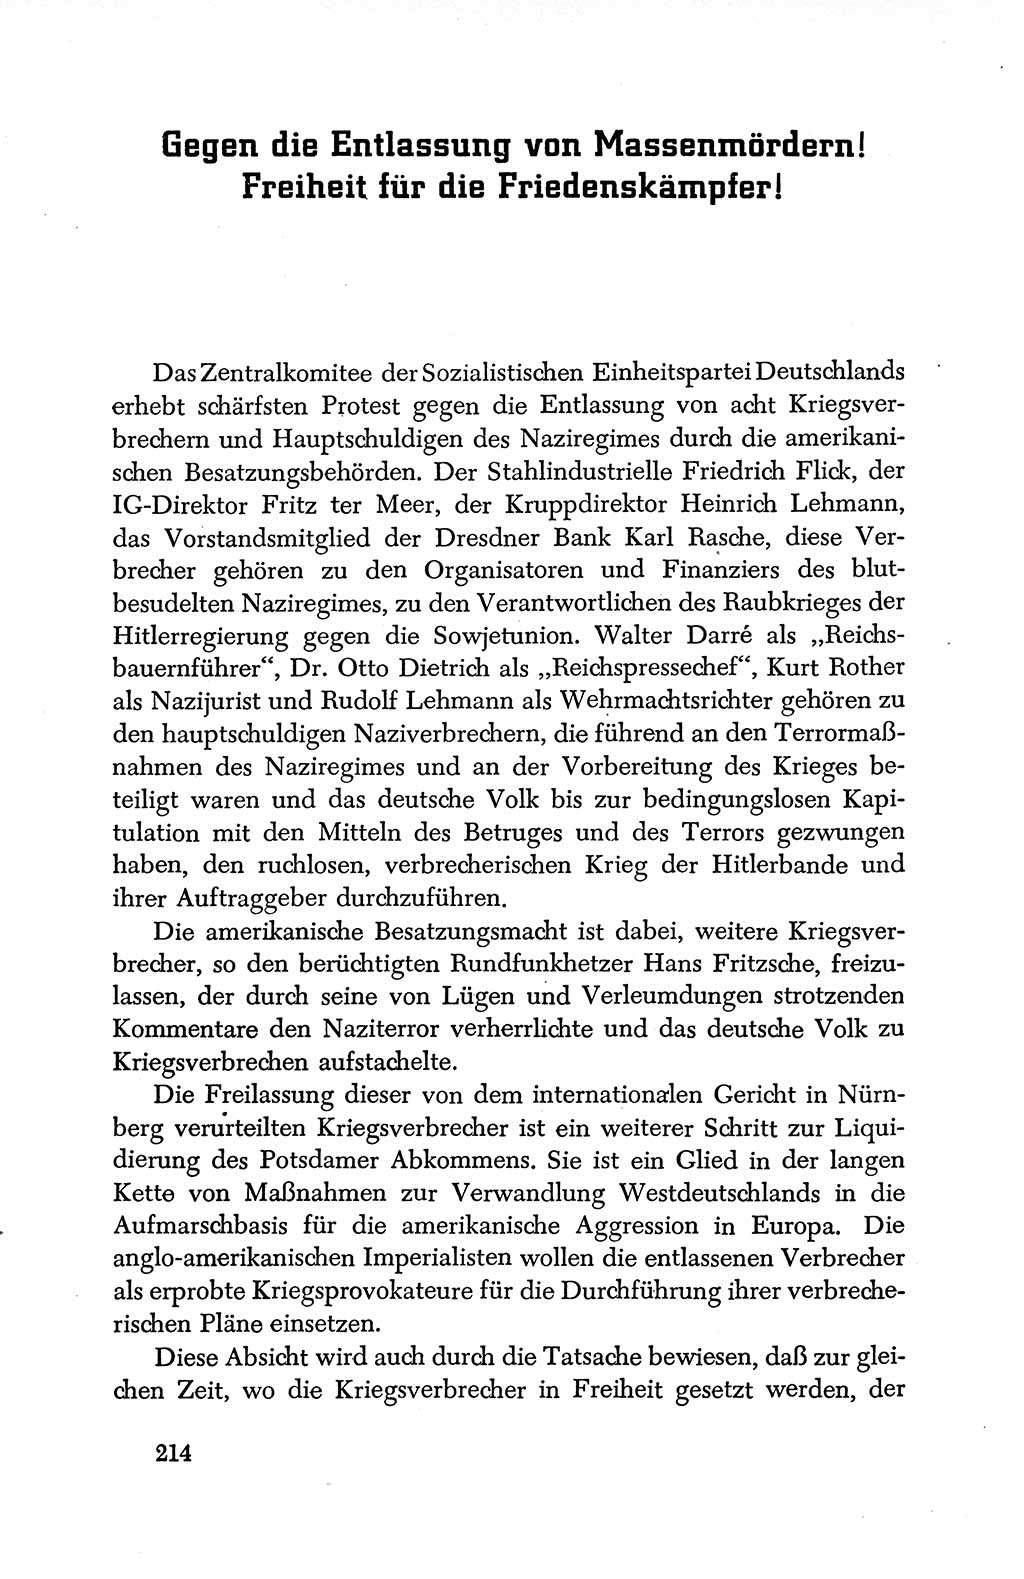 Dokumente der Sozialistischen Einheitspartei Deutschlands (SED) [Deutsche Demokratische Republik (DDR)] 1950-1952, Seite 214 (Dok. SED DDR 1950-1952, S. 214)